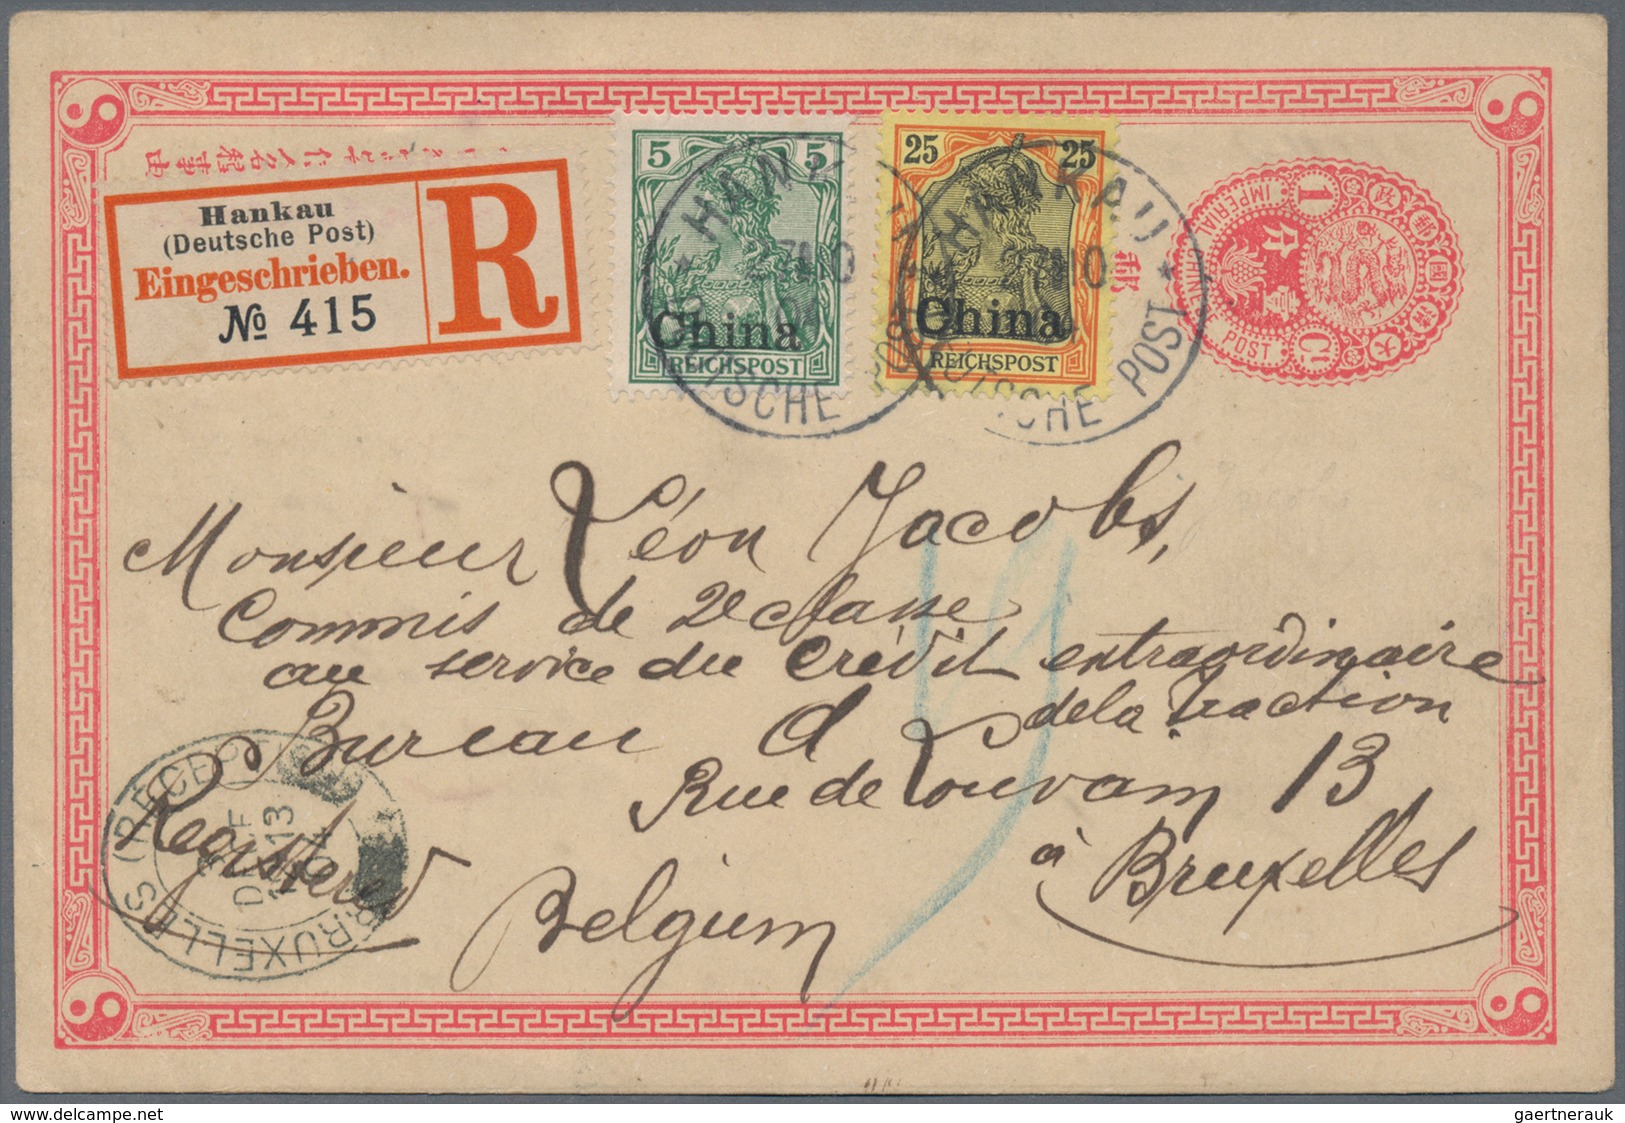 Deutsche Post In China: 1904, 5 Pfg. Und 25 Pfg. Auf R-Karte (chinesische GA-Karte Als Formular Verw - Deutsche Post In China